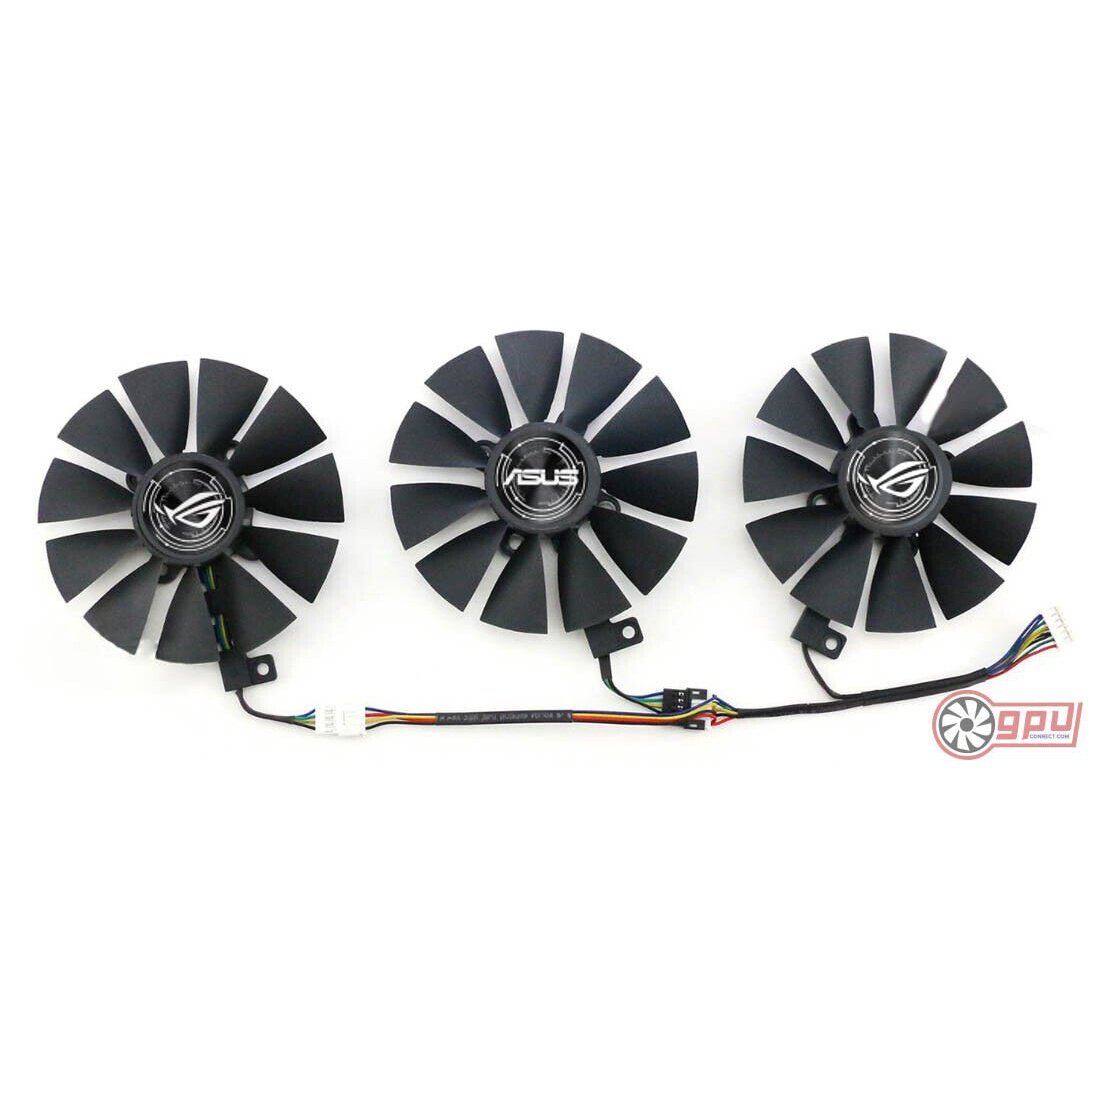 ASUS STRIX GTX 980 1060 1070 1080 Ti / RX 580 - Replacement Cooler Fan Set - GPUCONNECT.COM